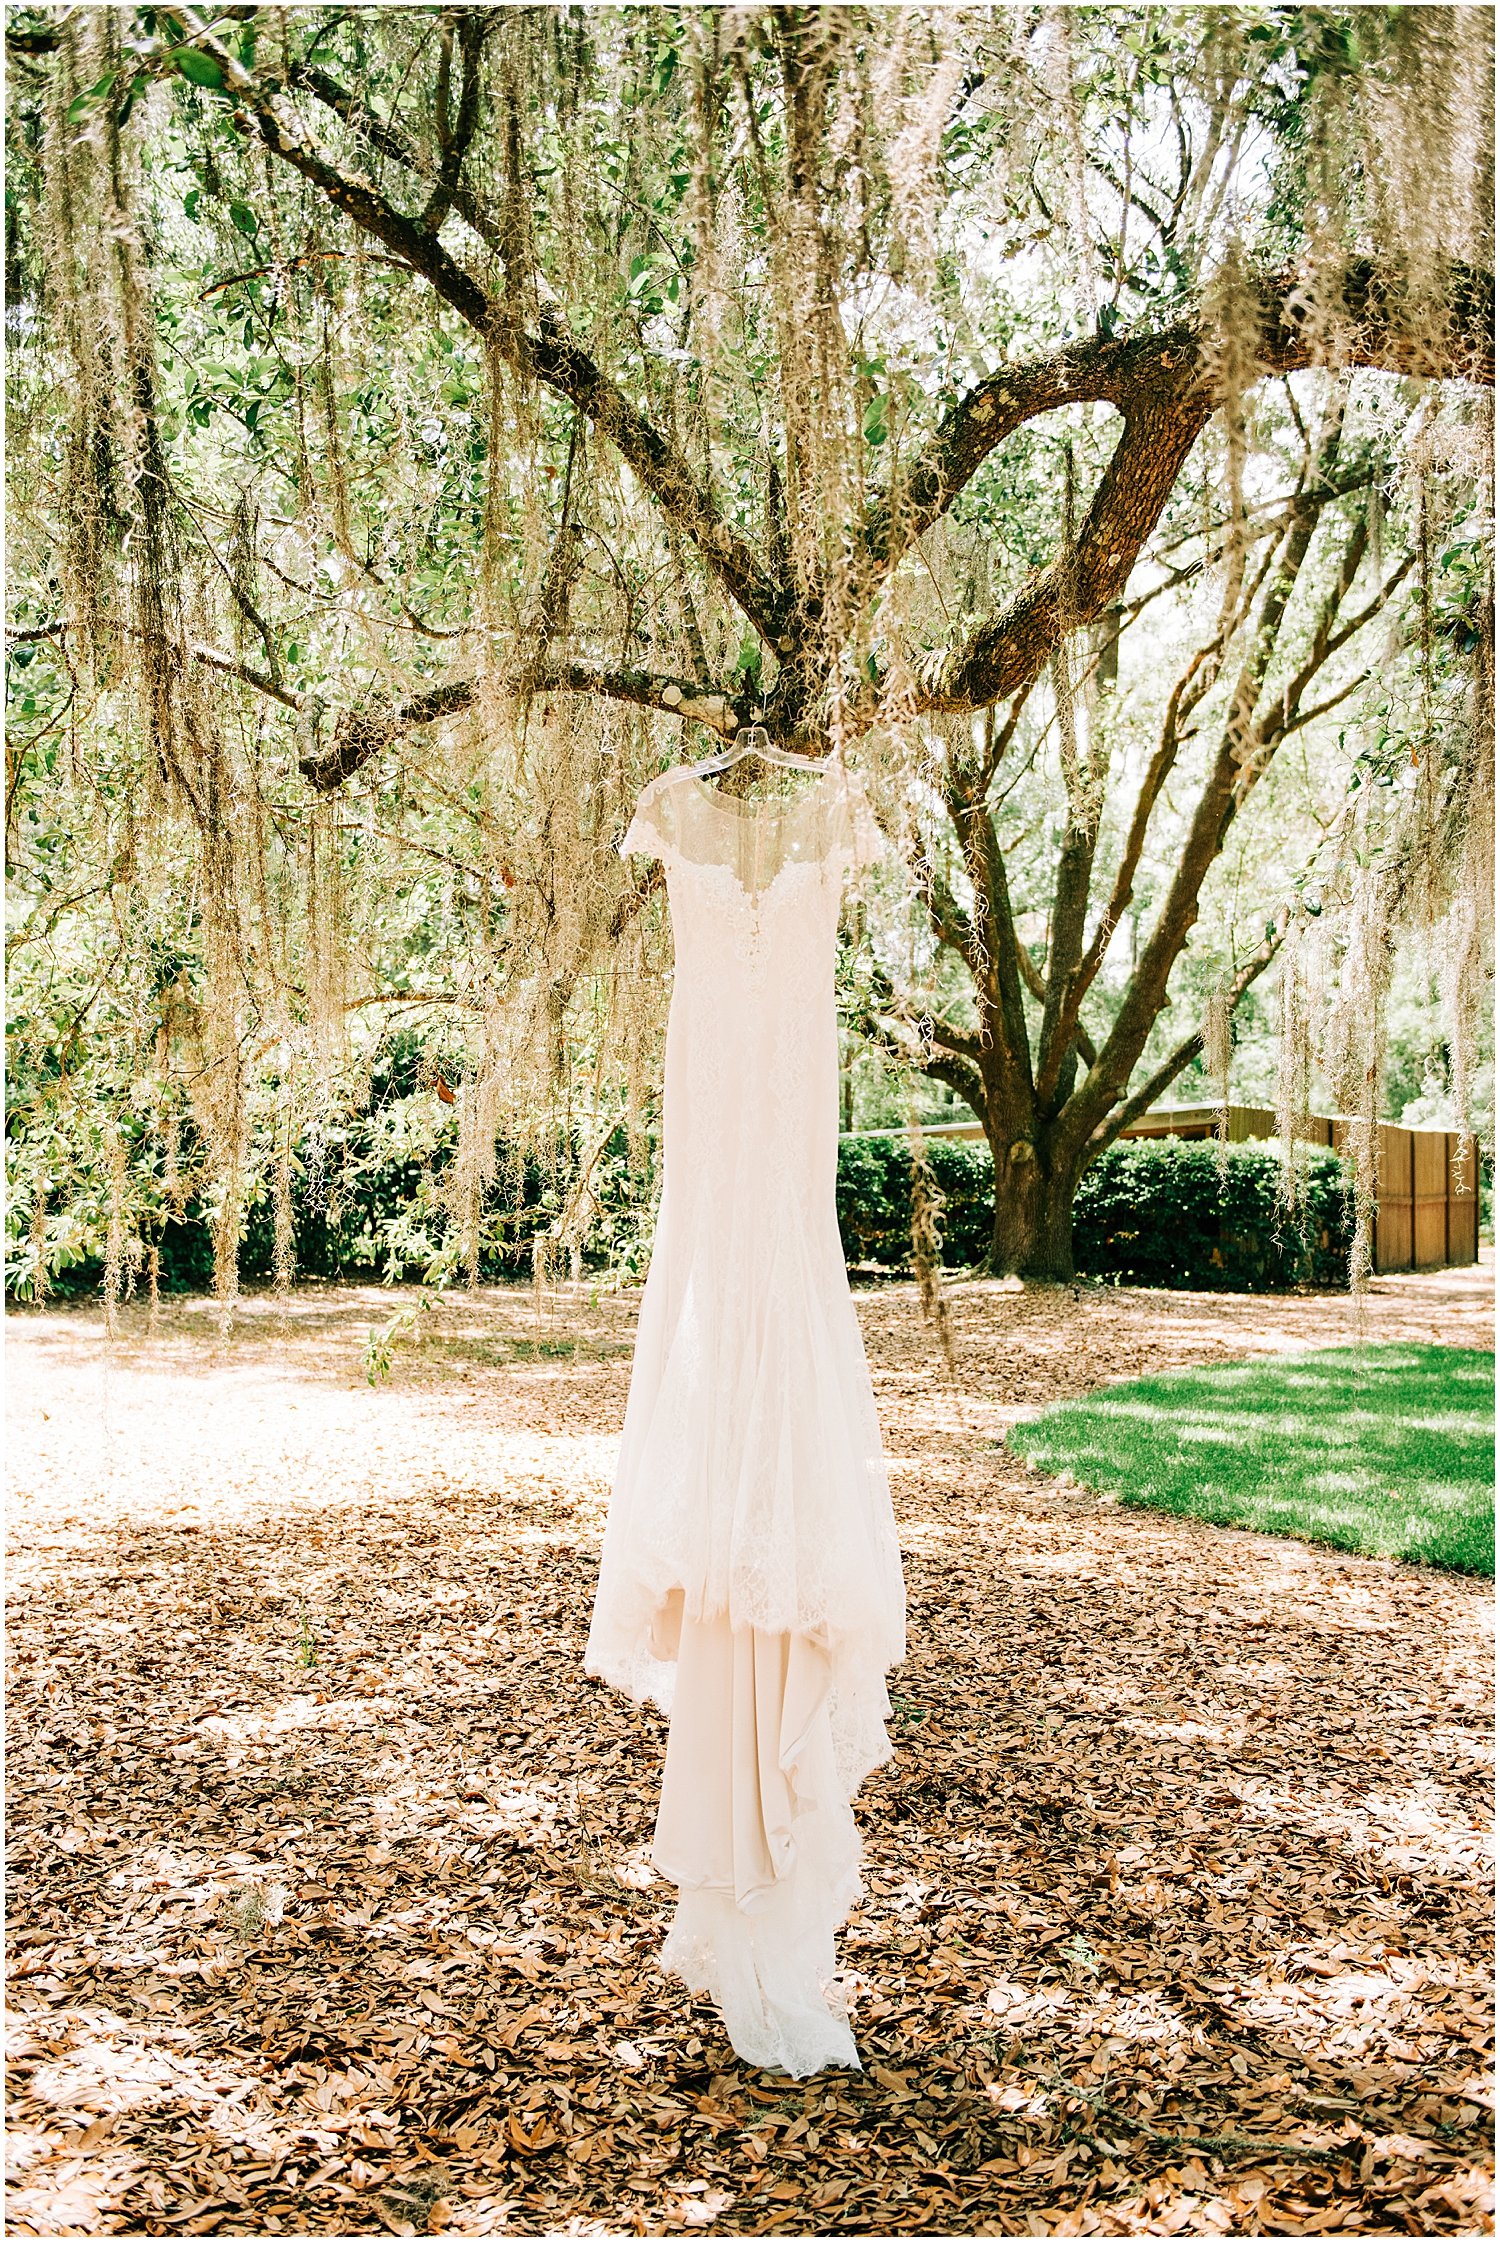  bride’s wedding dress in Bowing oaks 